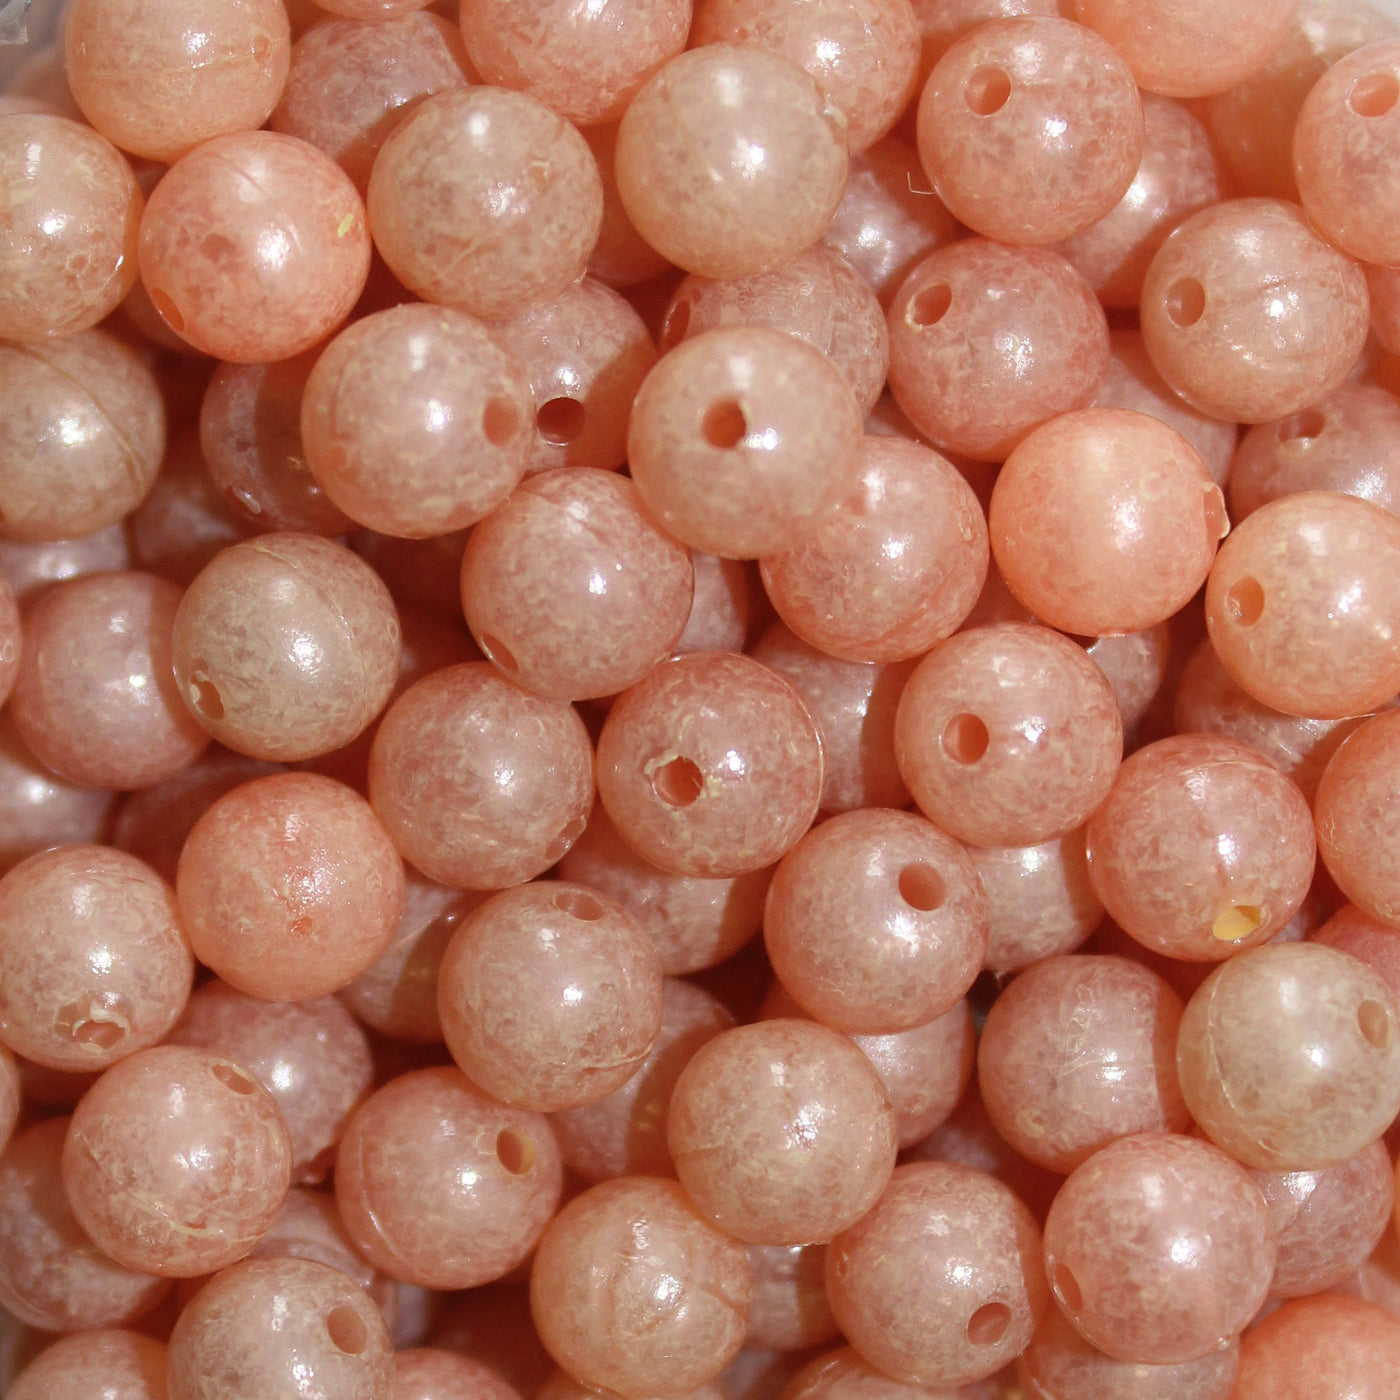 Trout Beads Mottledbeads 6mm